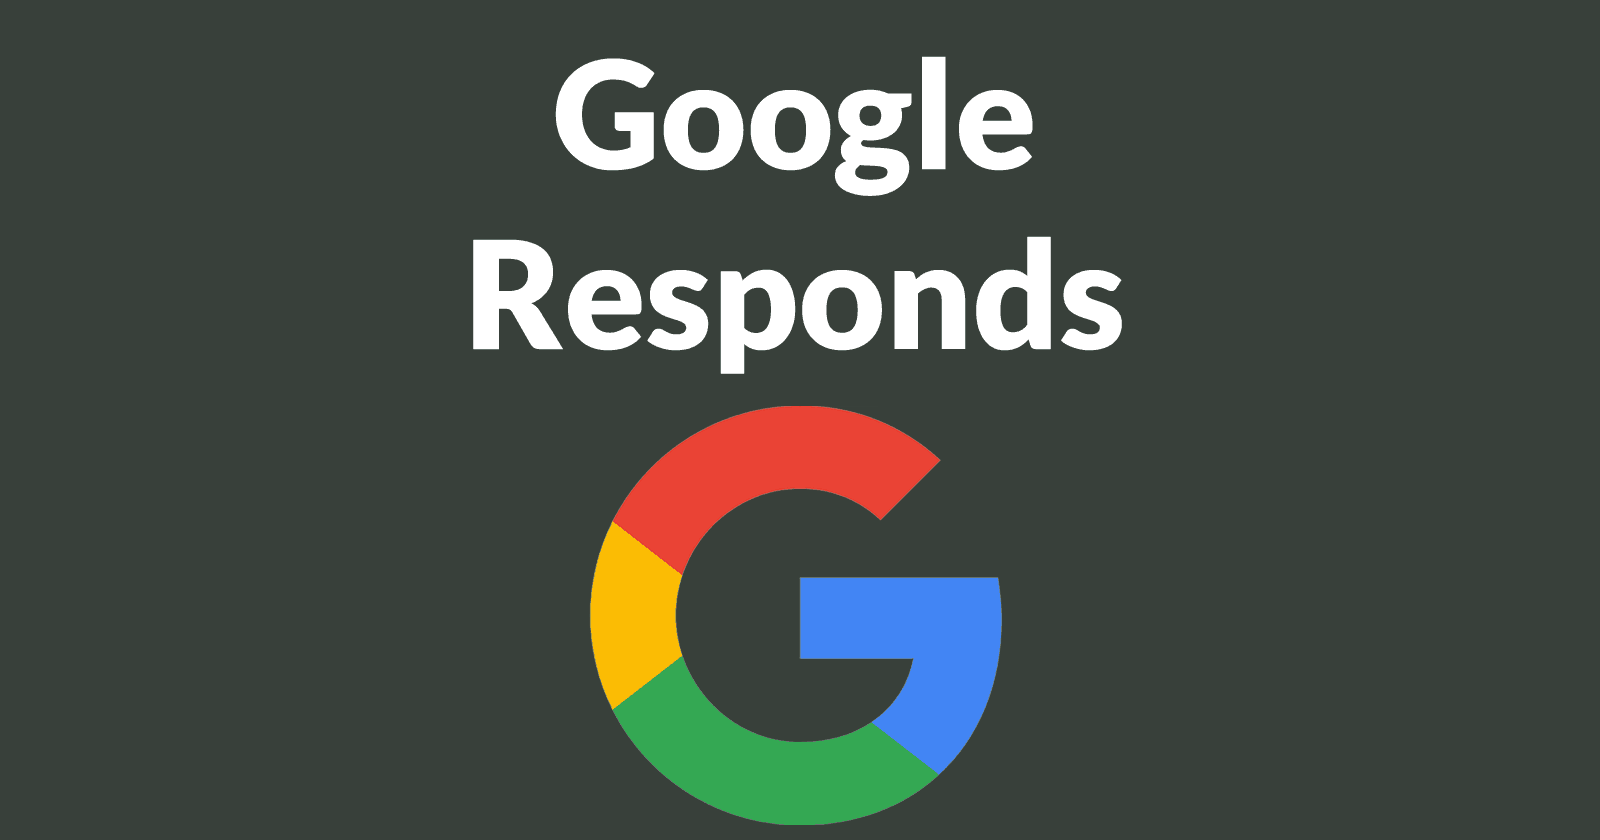 Google responds to Moz